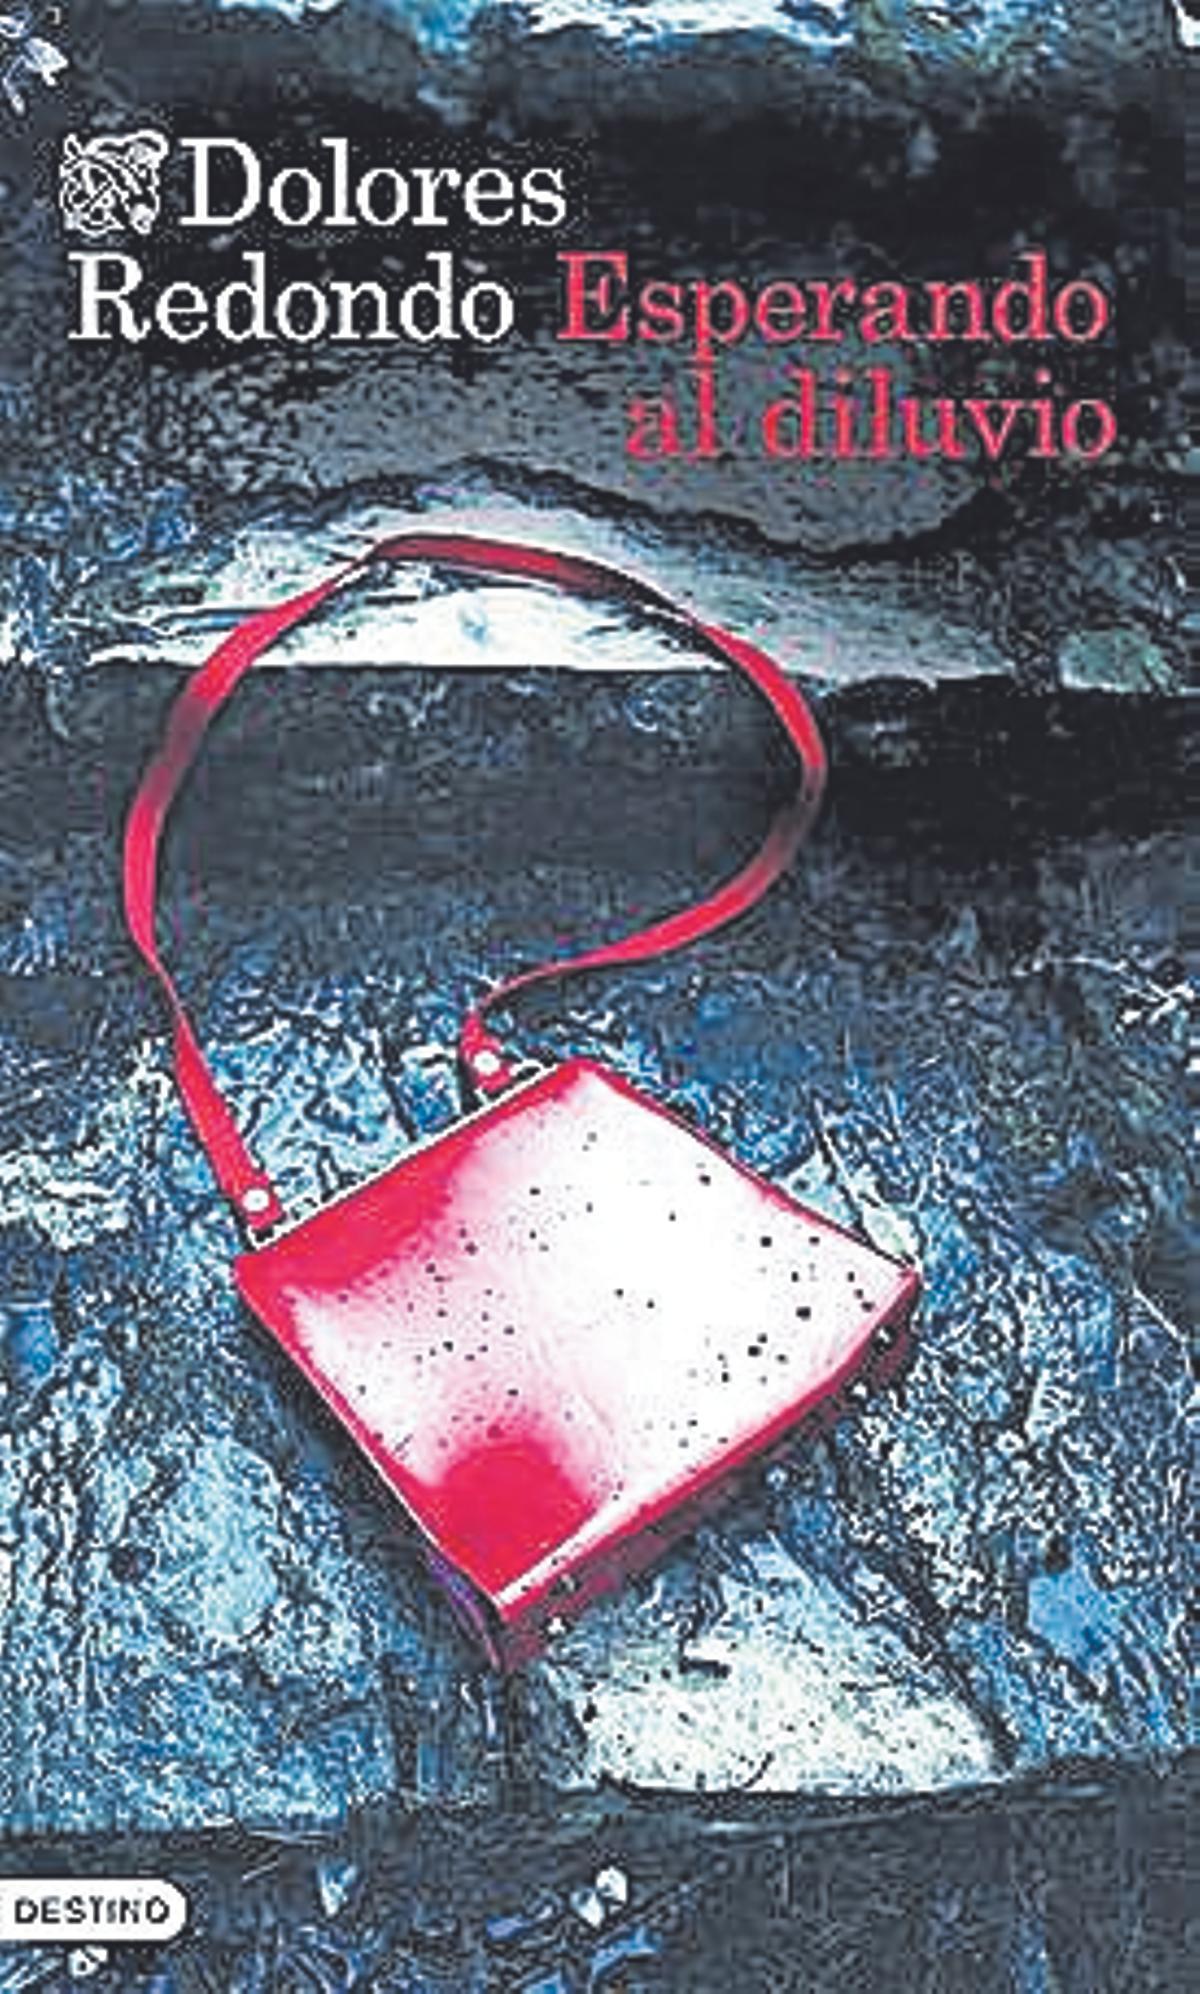 Dolores Redondo  Esperando al diluvio   Ediciones Destino   576 páginas / 22,90 euros